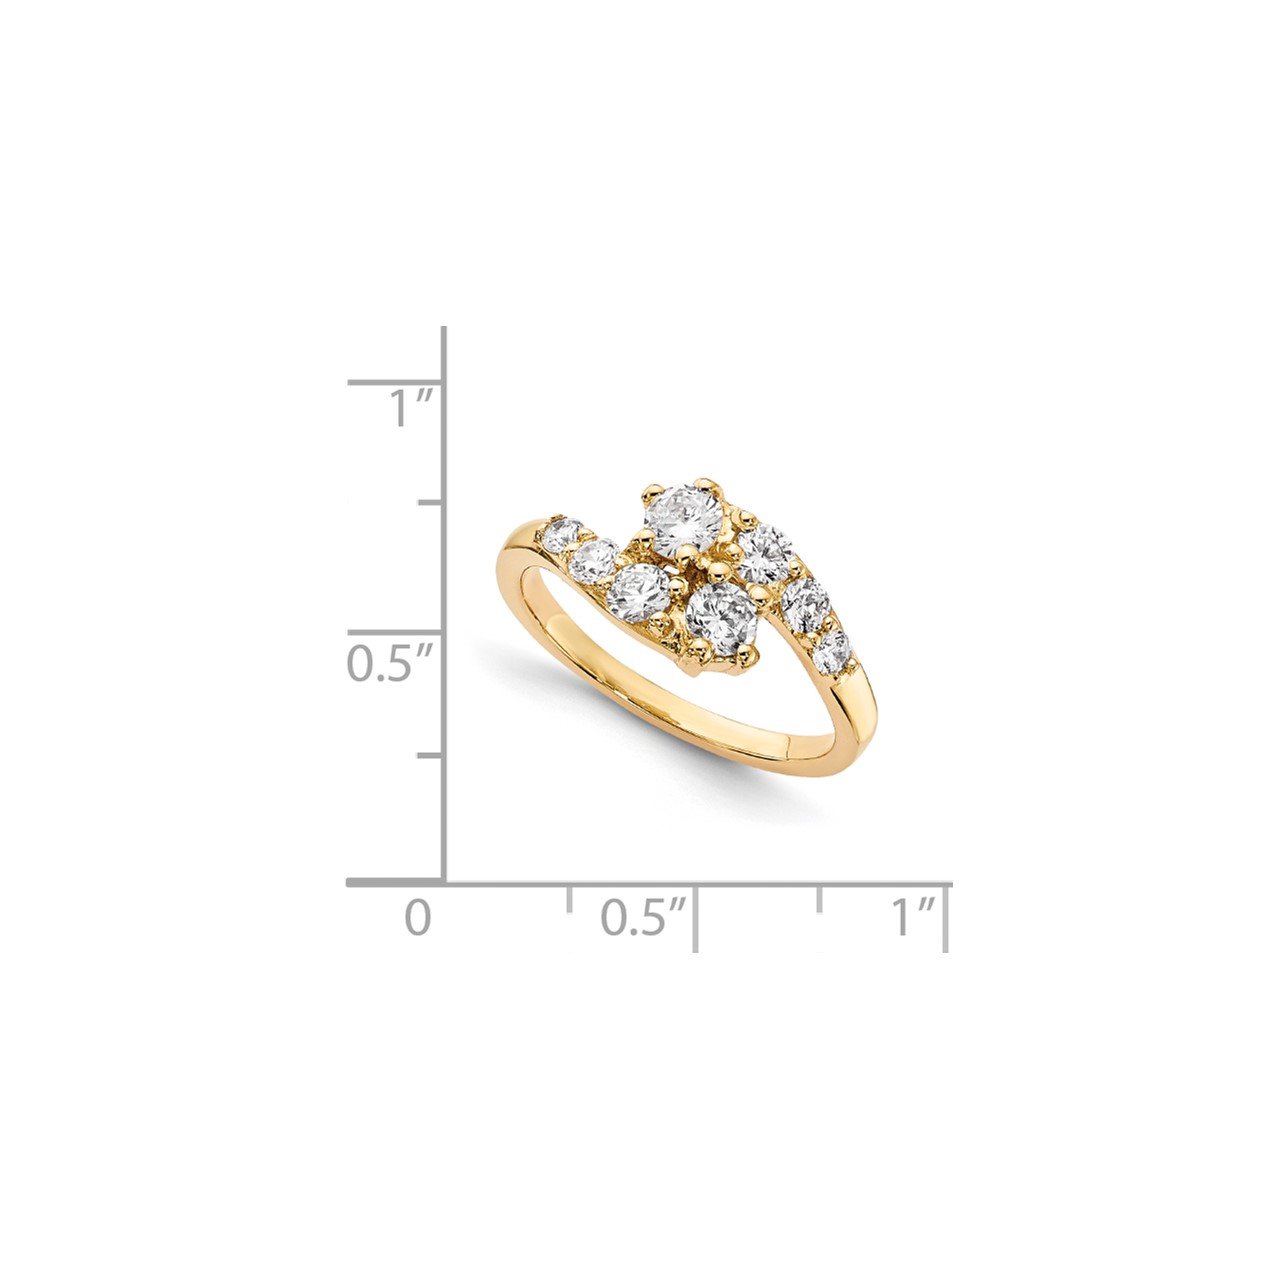 14KY AA Diamond 2-stone Ring Semi-Mount - 3.5 mm center stones-6